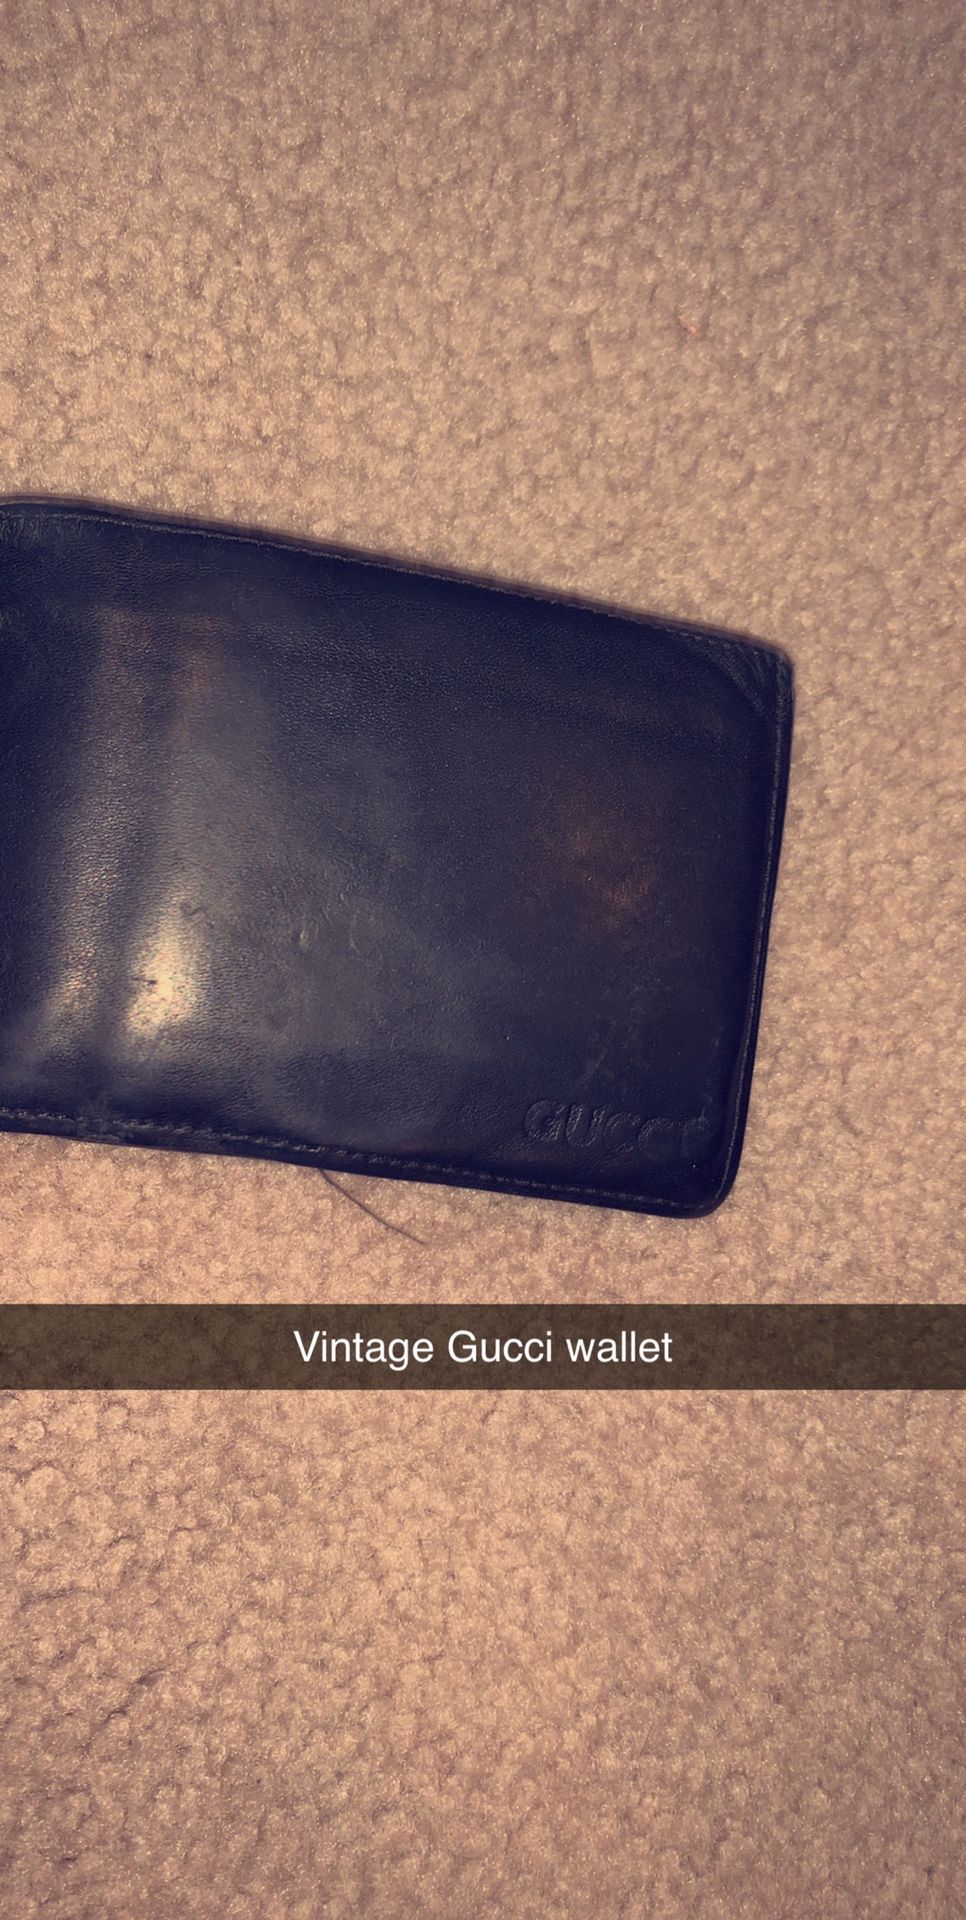 Vintage Gucci wallet